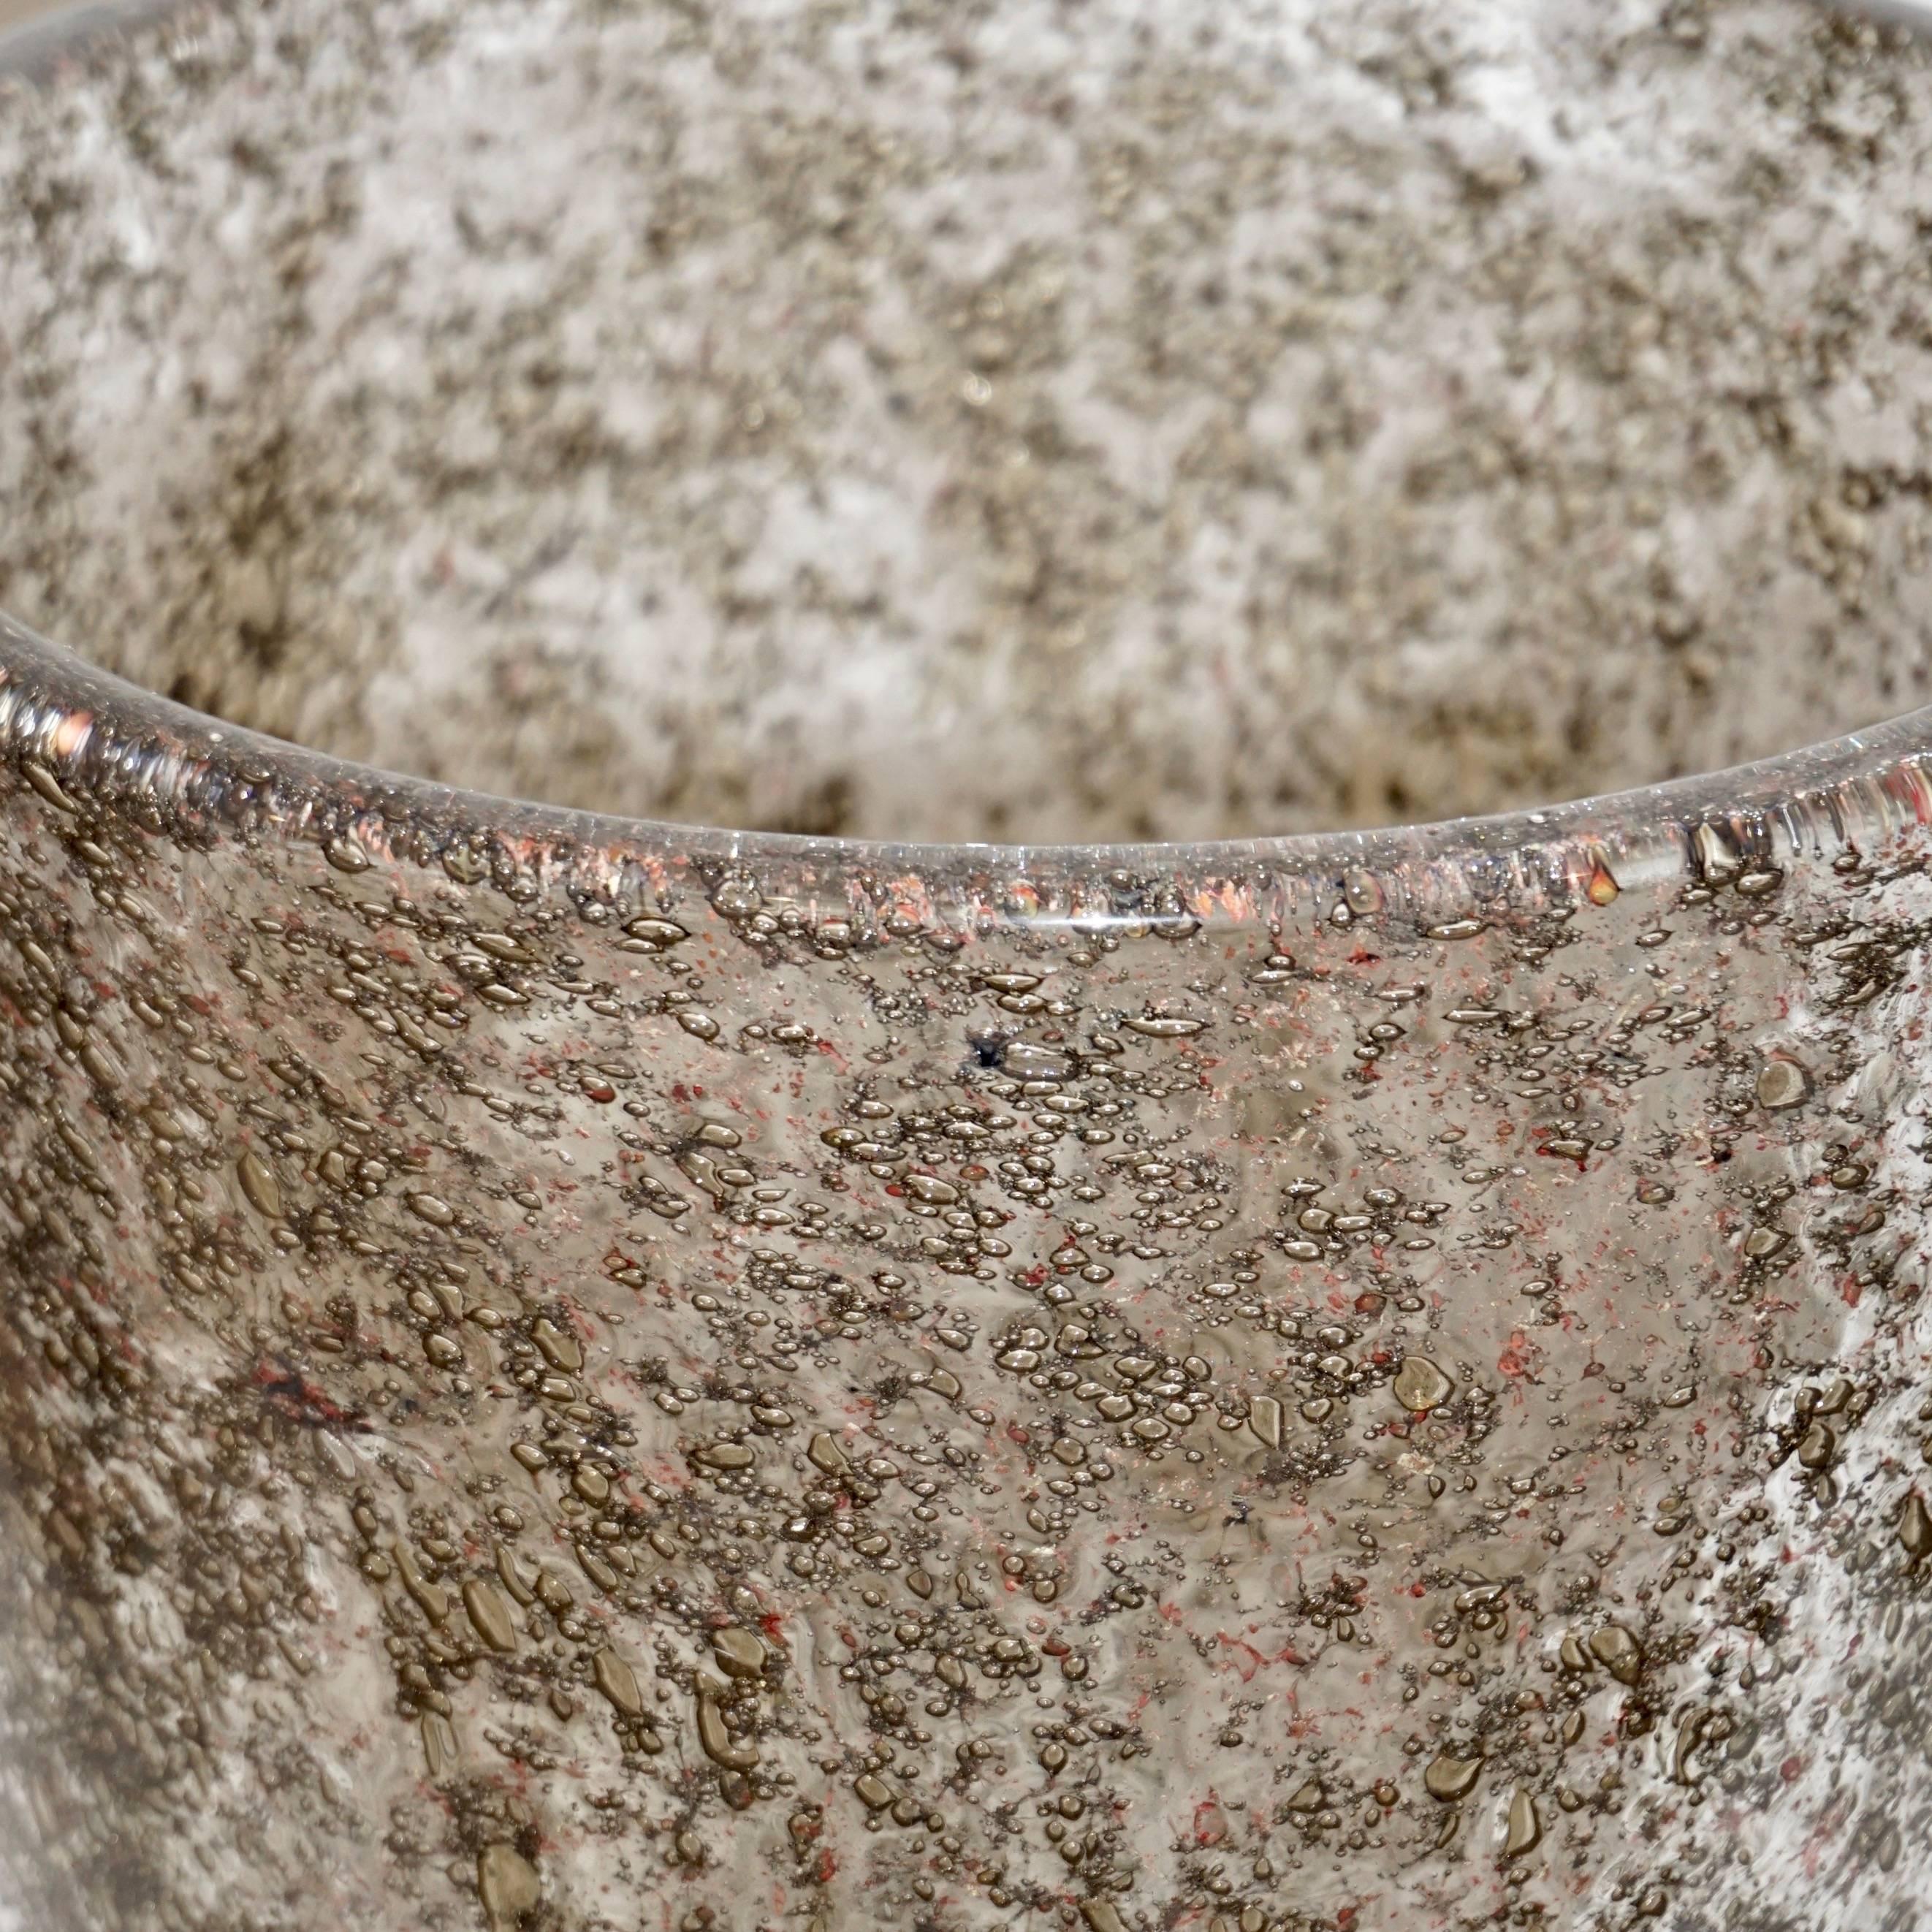 Vase contemporain en verre organique vénitien de Murano, soufflé selon une technique innovante avec inclusion métallique de laiton, créant une couleur bronze rare avec des mouchetures et des bulles brun-rouge en suspension dans le verre cristallin